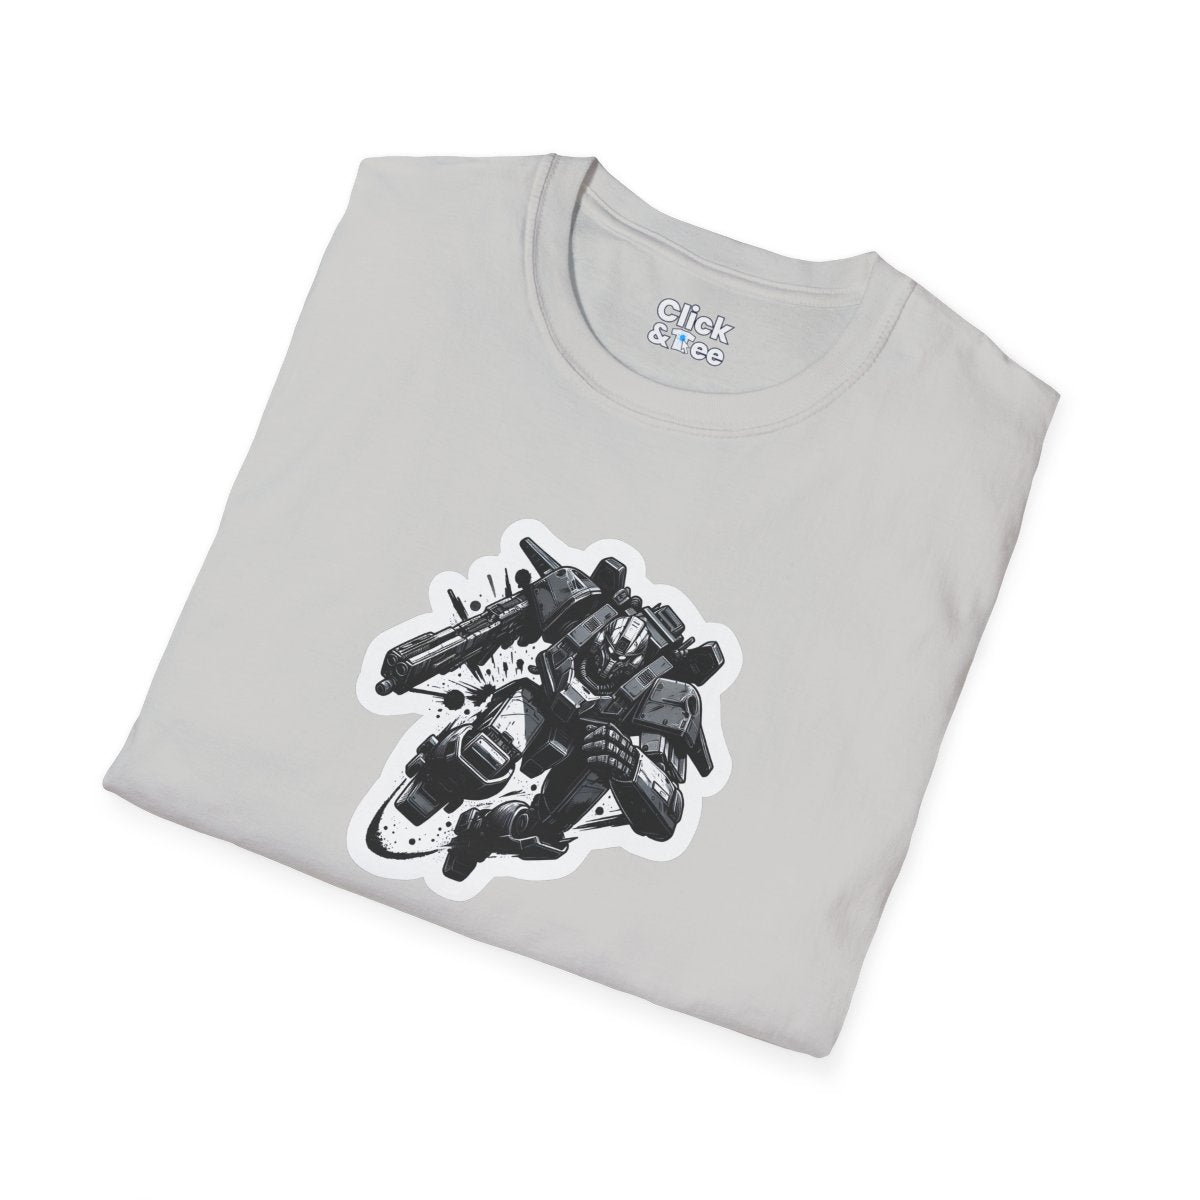 ComicMetal Mech-Warrior Unique T-Shirt Image 1